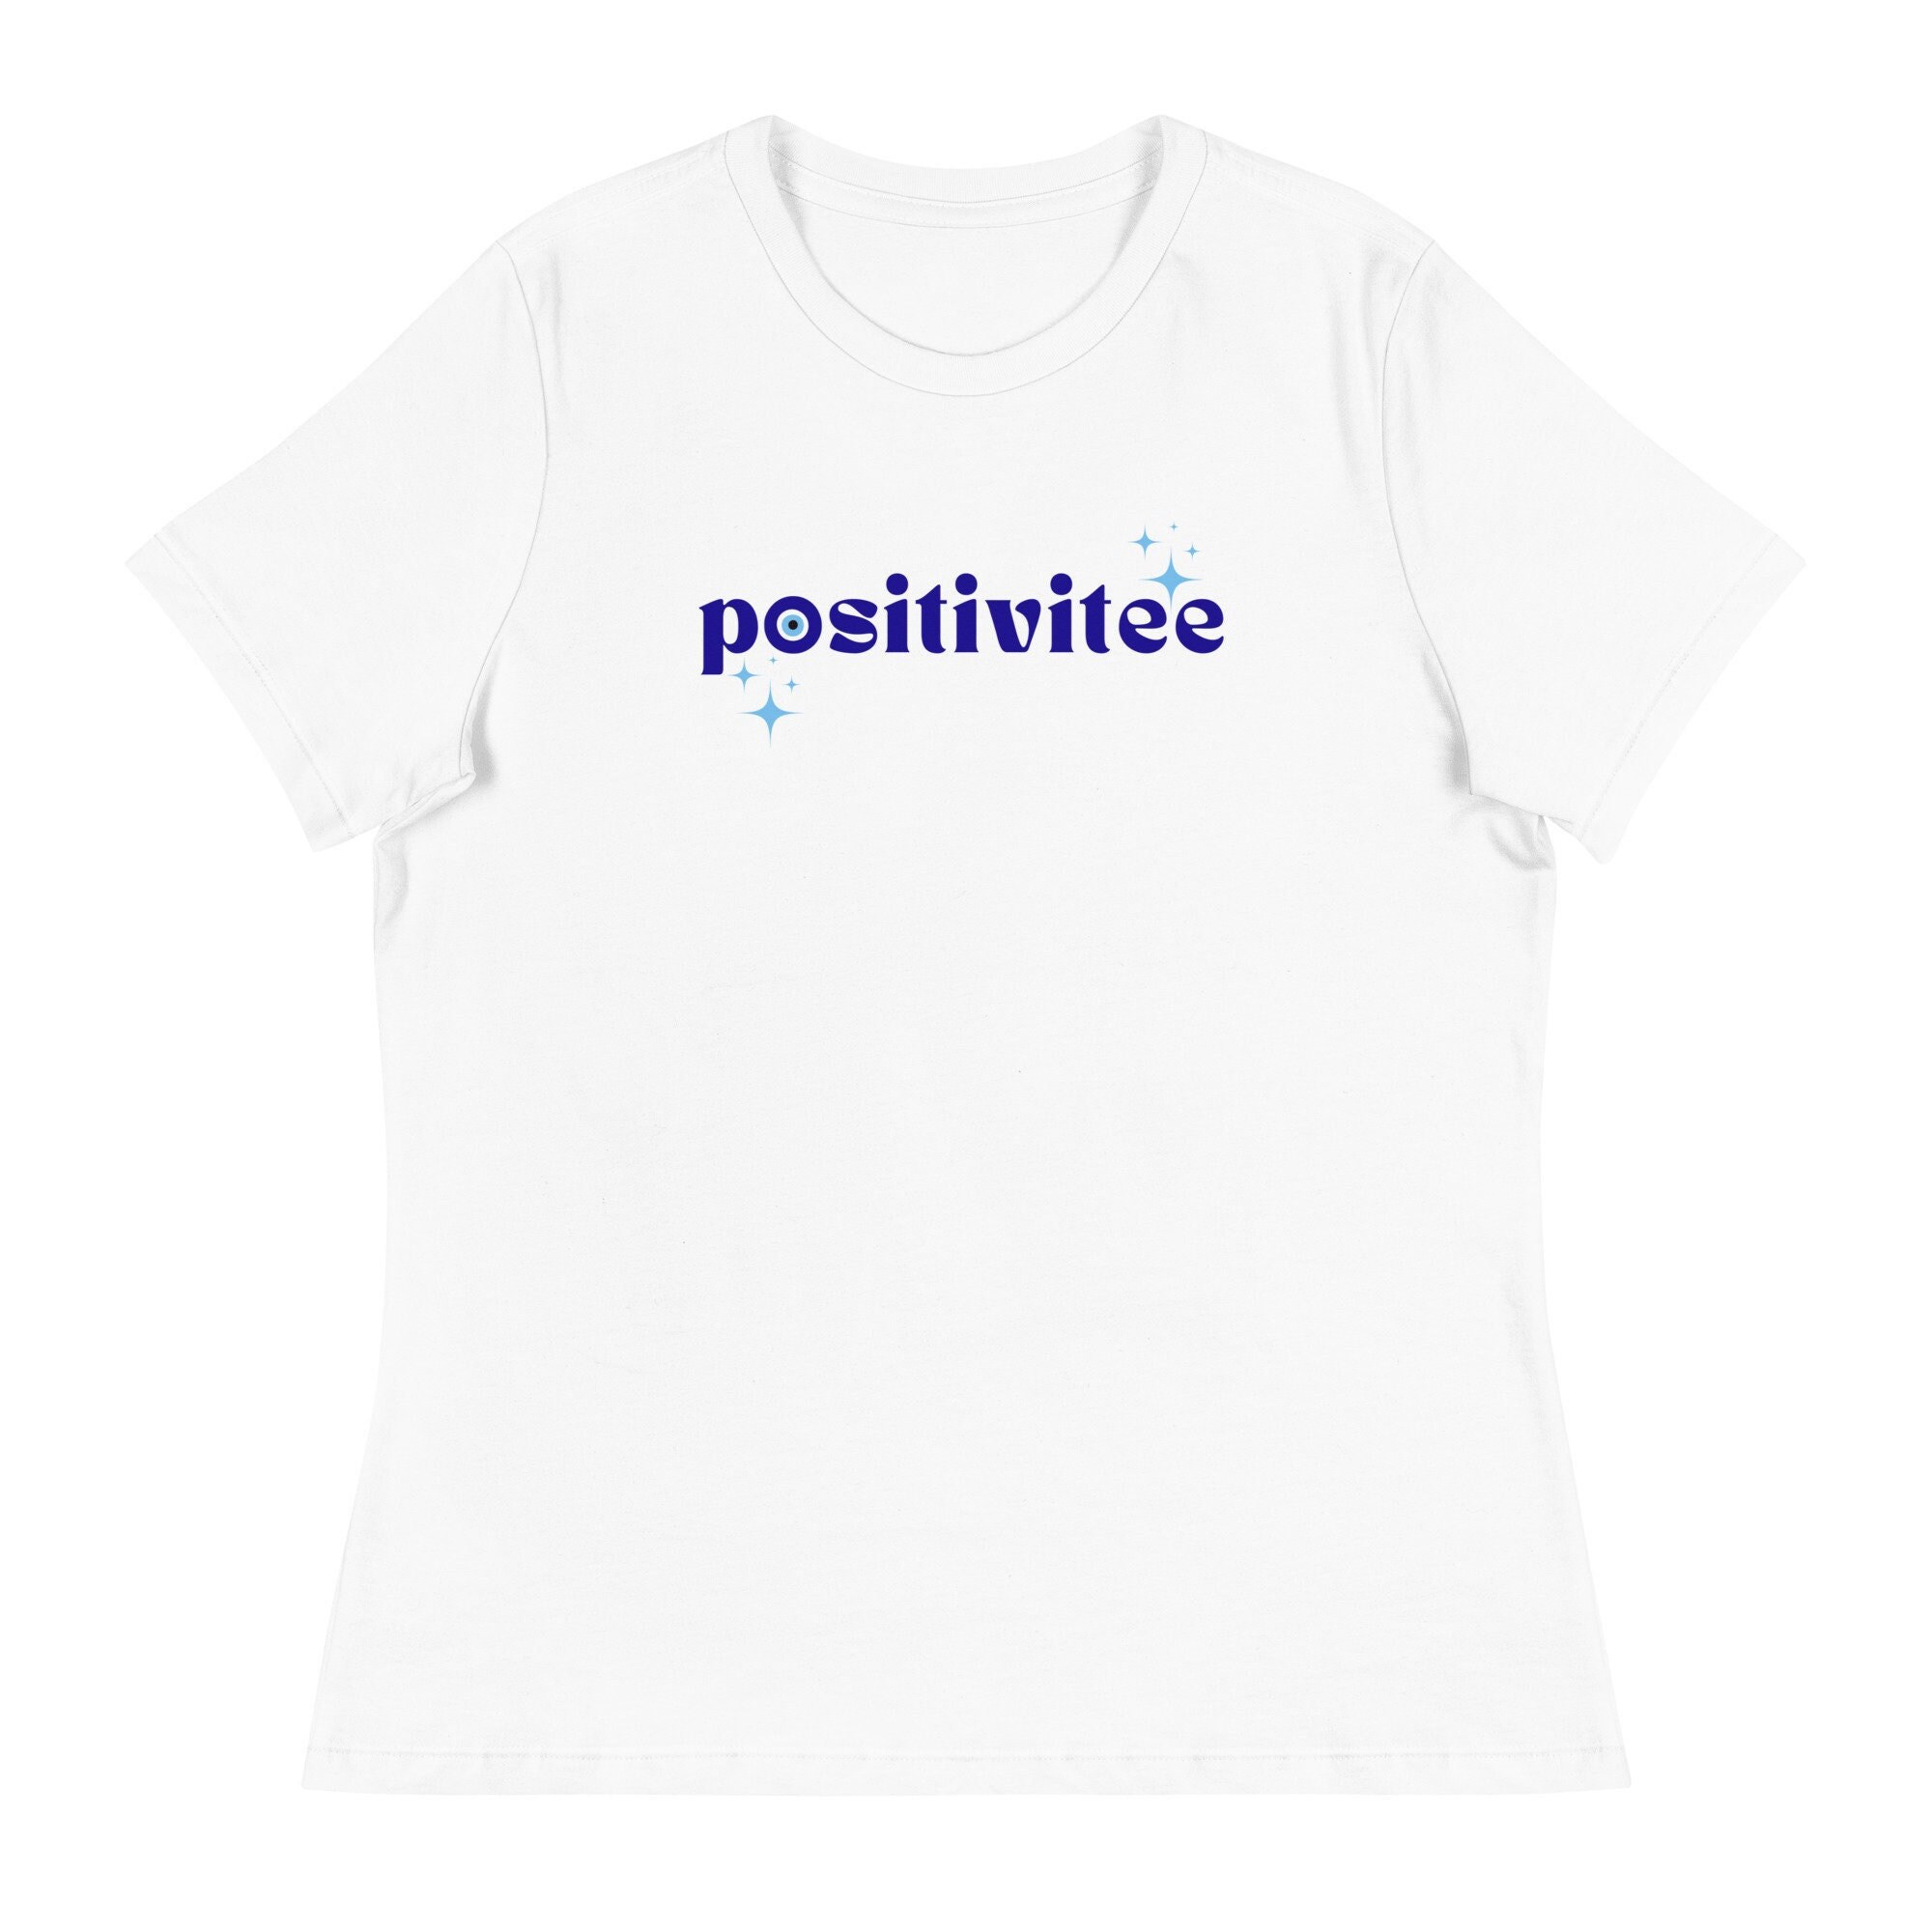 BACK Print Positive Mindset T-shirt for Mental Health Support